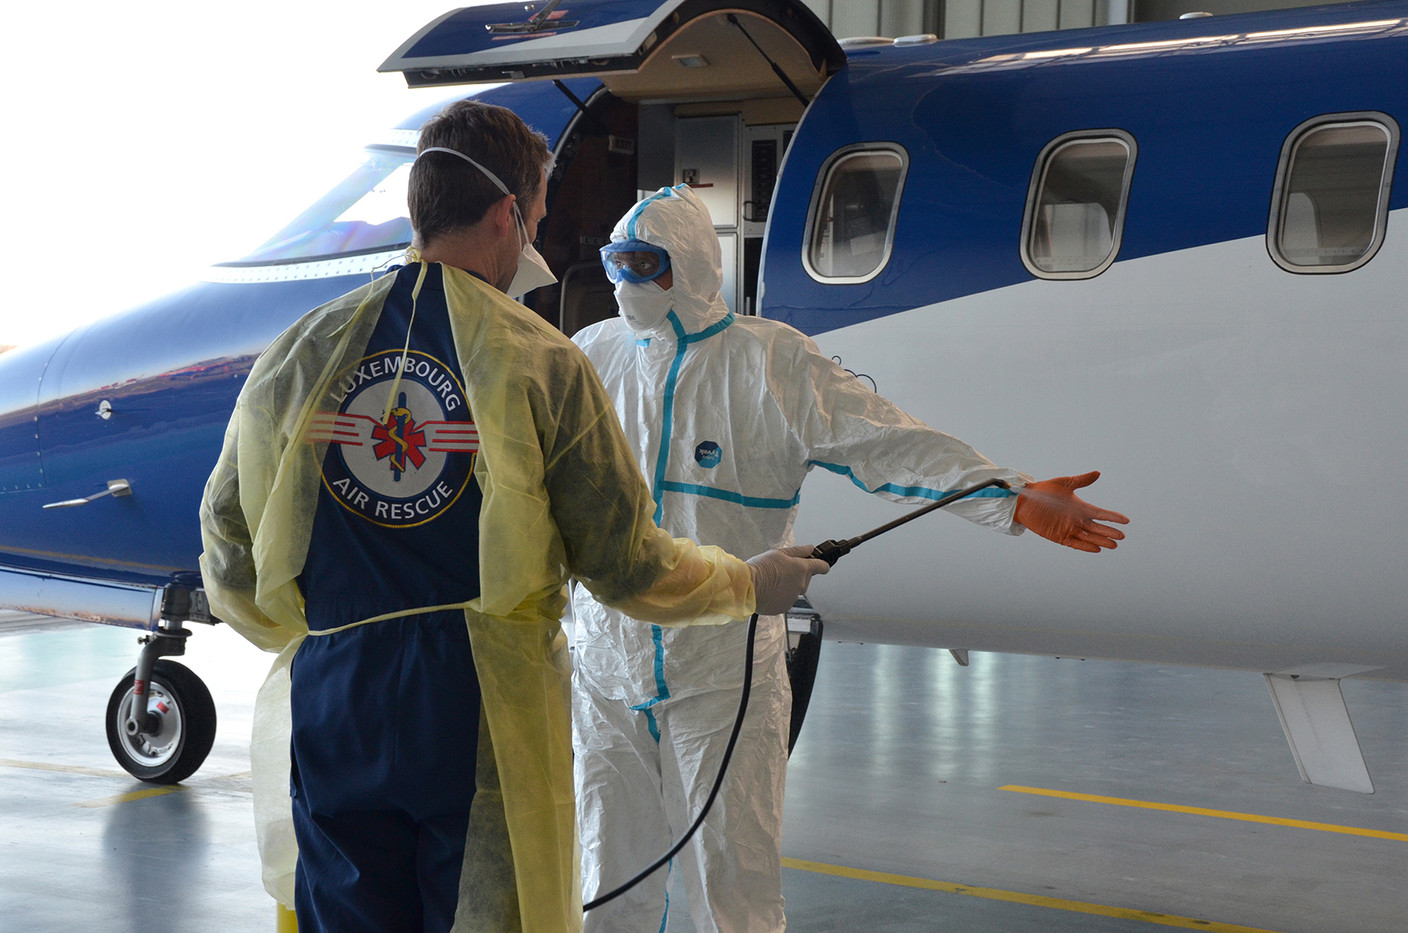 Les procédures sanitaires pour l’équipage sont une des priorités absolues de LAR. Luxembourg Air Rescue